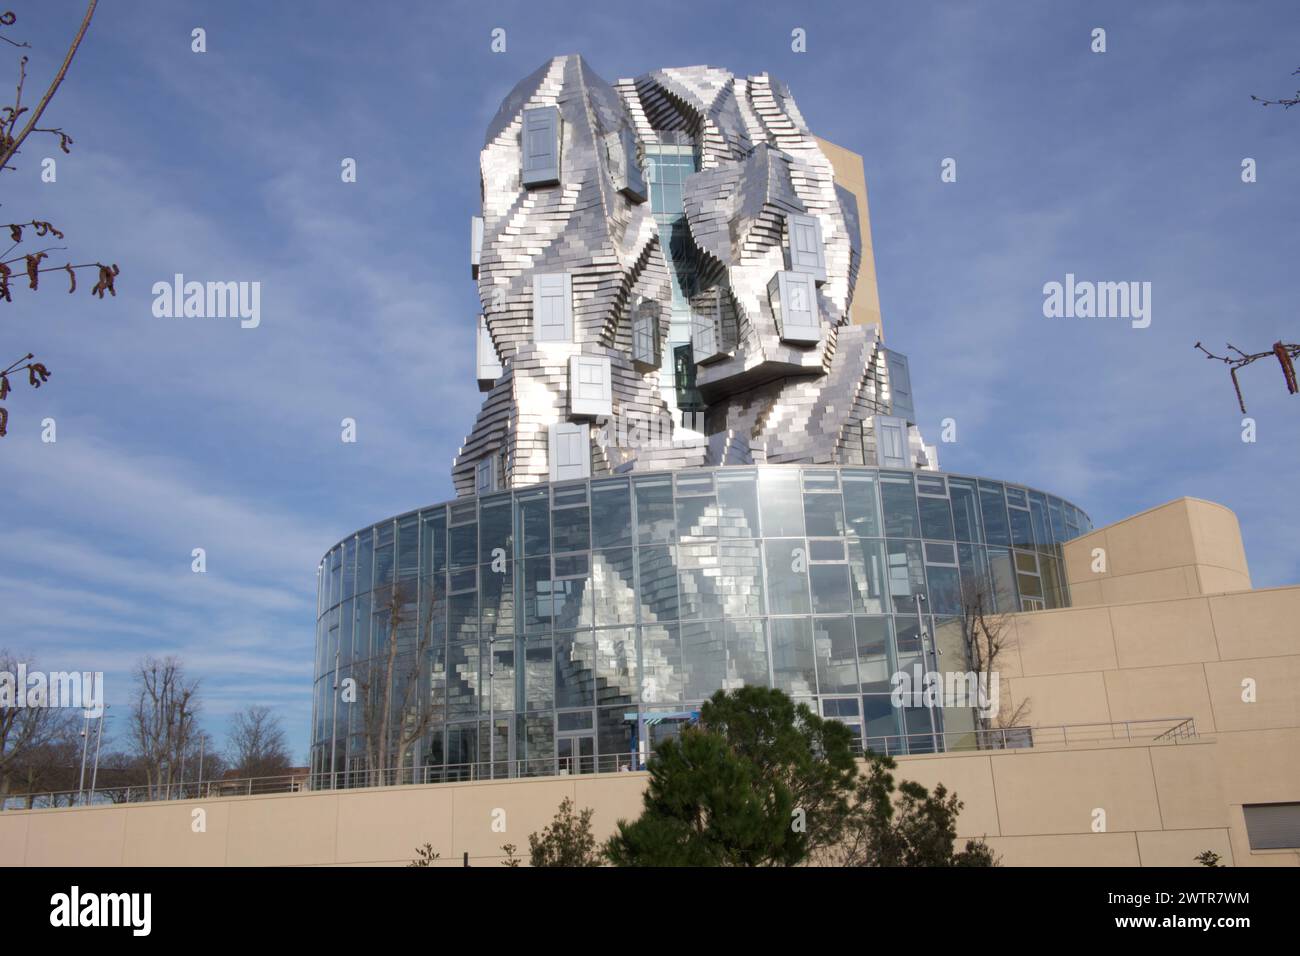 La galerie Luma de l'architecte Frank Gehry se reflète dans la piscine du Parc des ateliers Arles France Banque D'Images